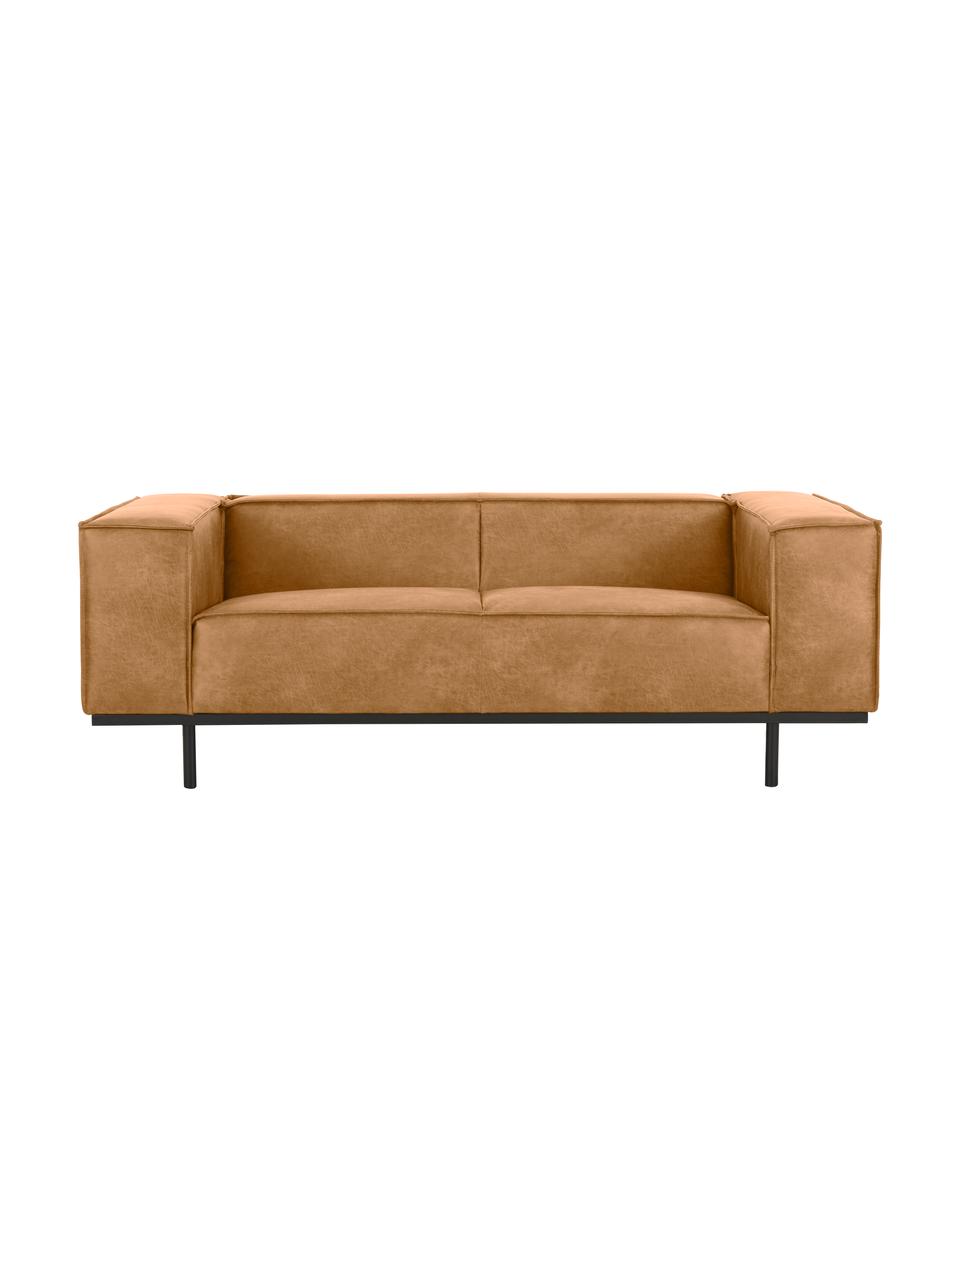 Sofa ze skóry z metalowymi nogami Abigail (2-osobowa), Tapicerka: 70% skóra, 30% poliester , Nogi: metal lakierowany, Brązowy, S 190 x G 95 cm